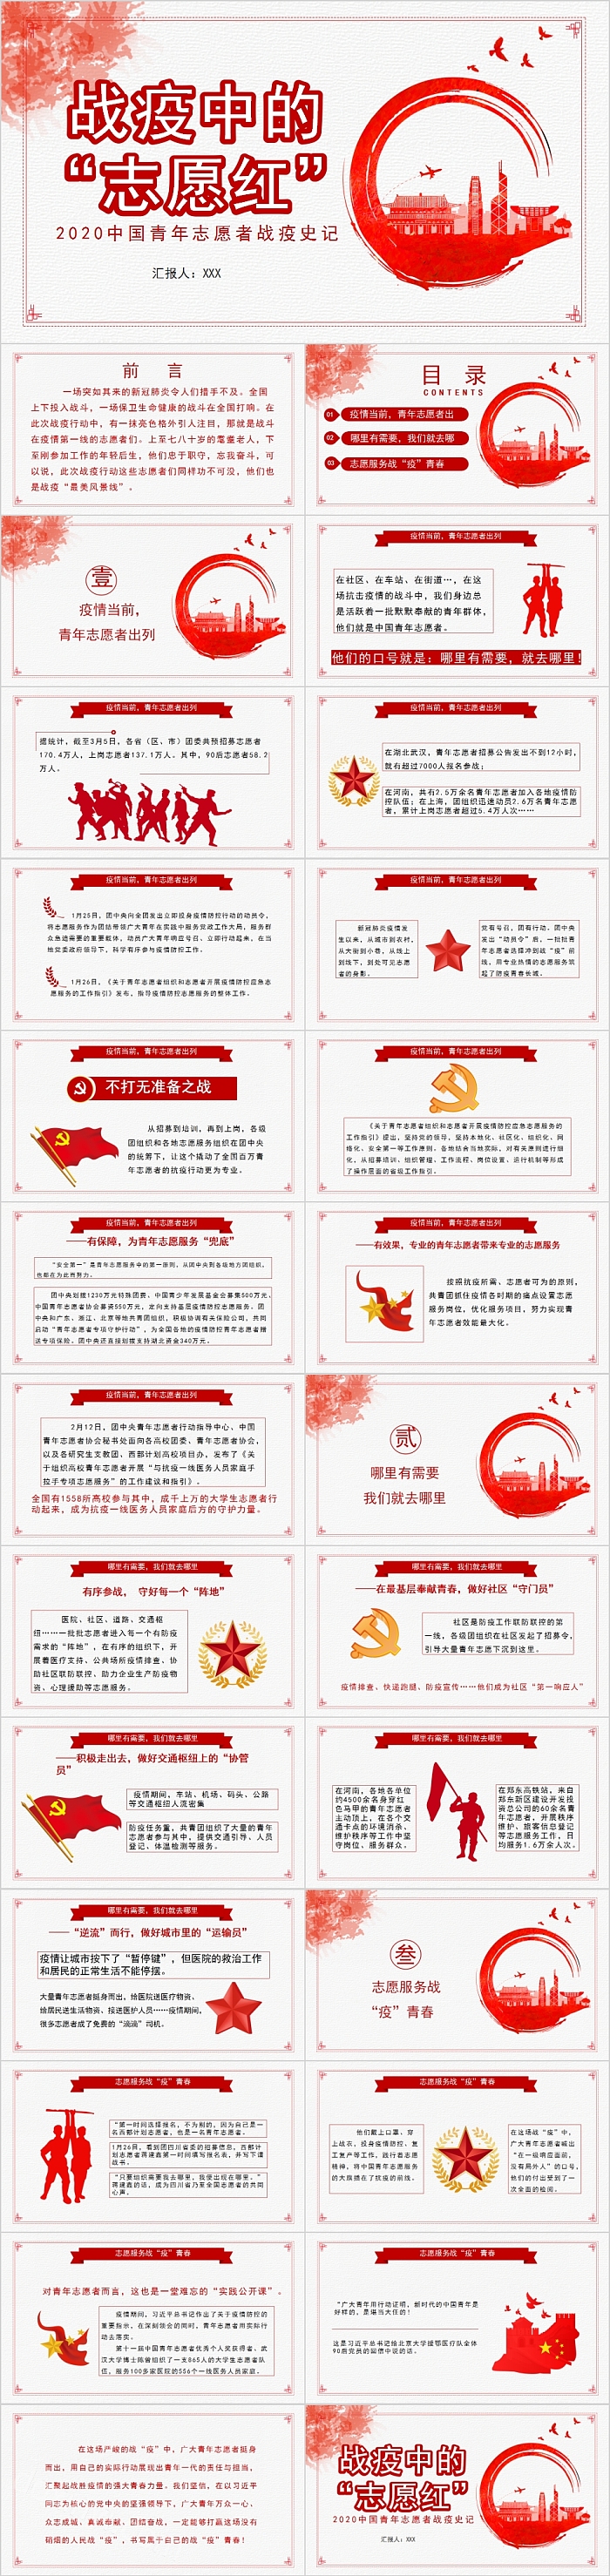 战疫中的“志愿红”中国青年志愿者战疫史记PPT模板